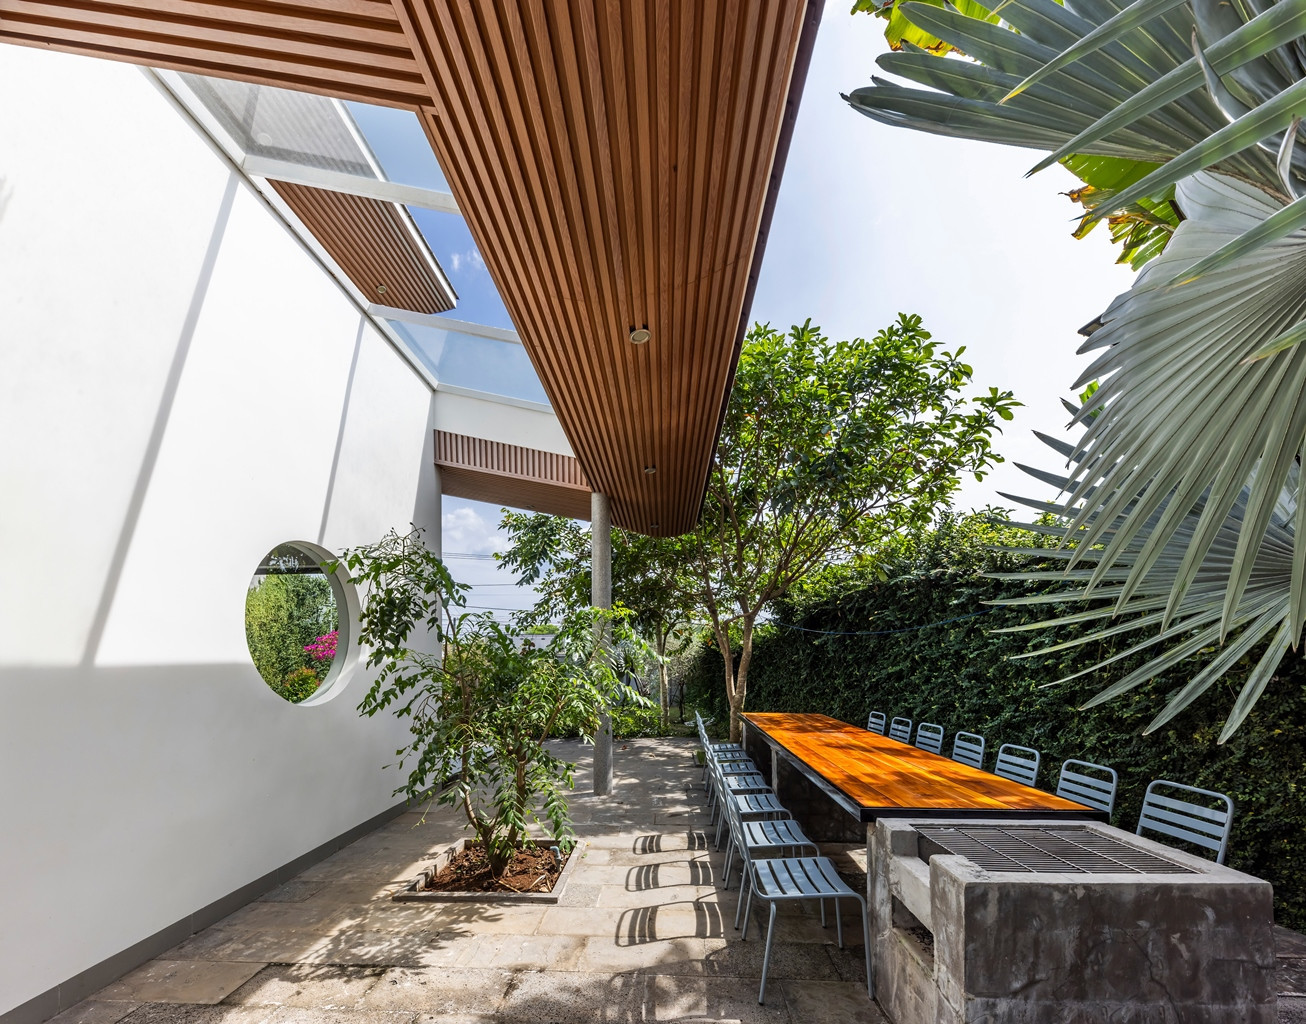 Nhóm thiết kế đã bố trí khu vực mái hiên lớn ở phía trước nhà, kết hợp với cảnh quan cây xanh nhằm tạo ra một không gian rộng rãi, phù hợp để gia chủ ngồi uống trà, trò chuyện với bạn bè, hàng xóm.